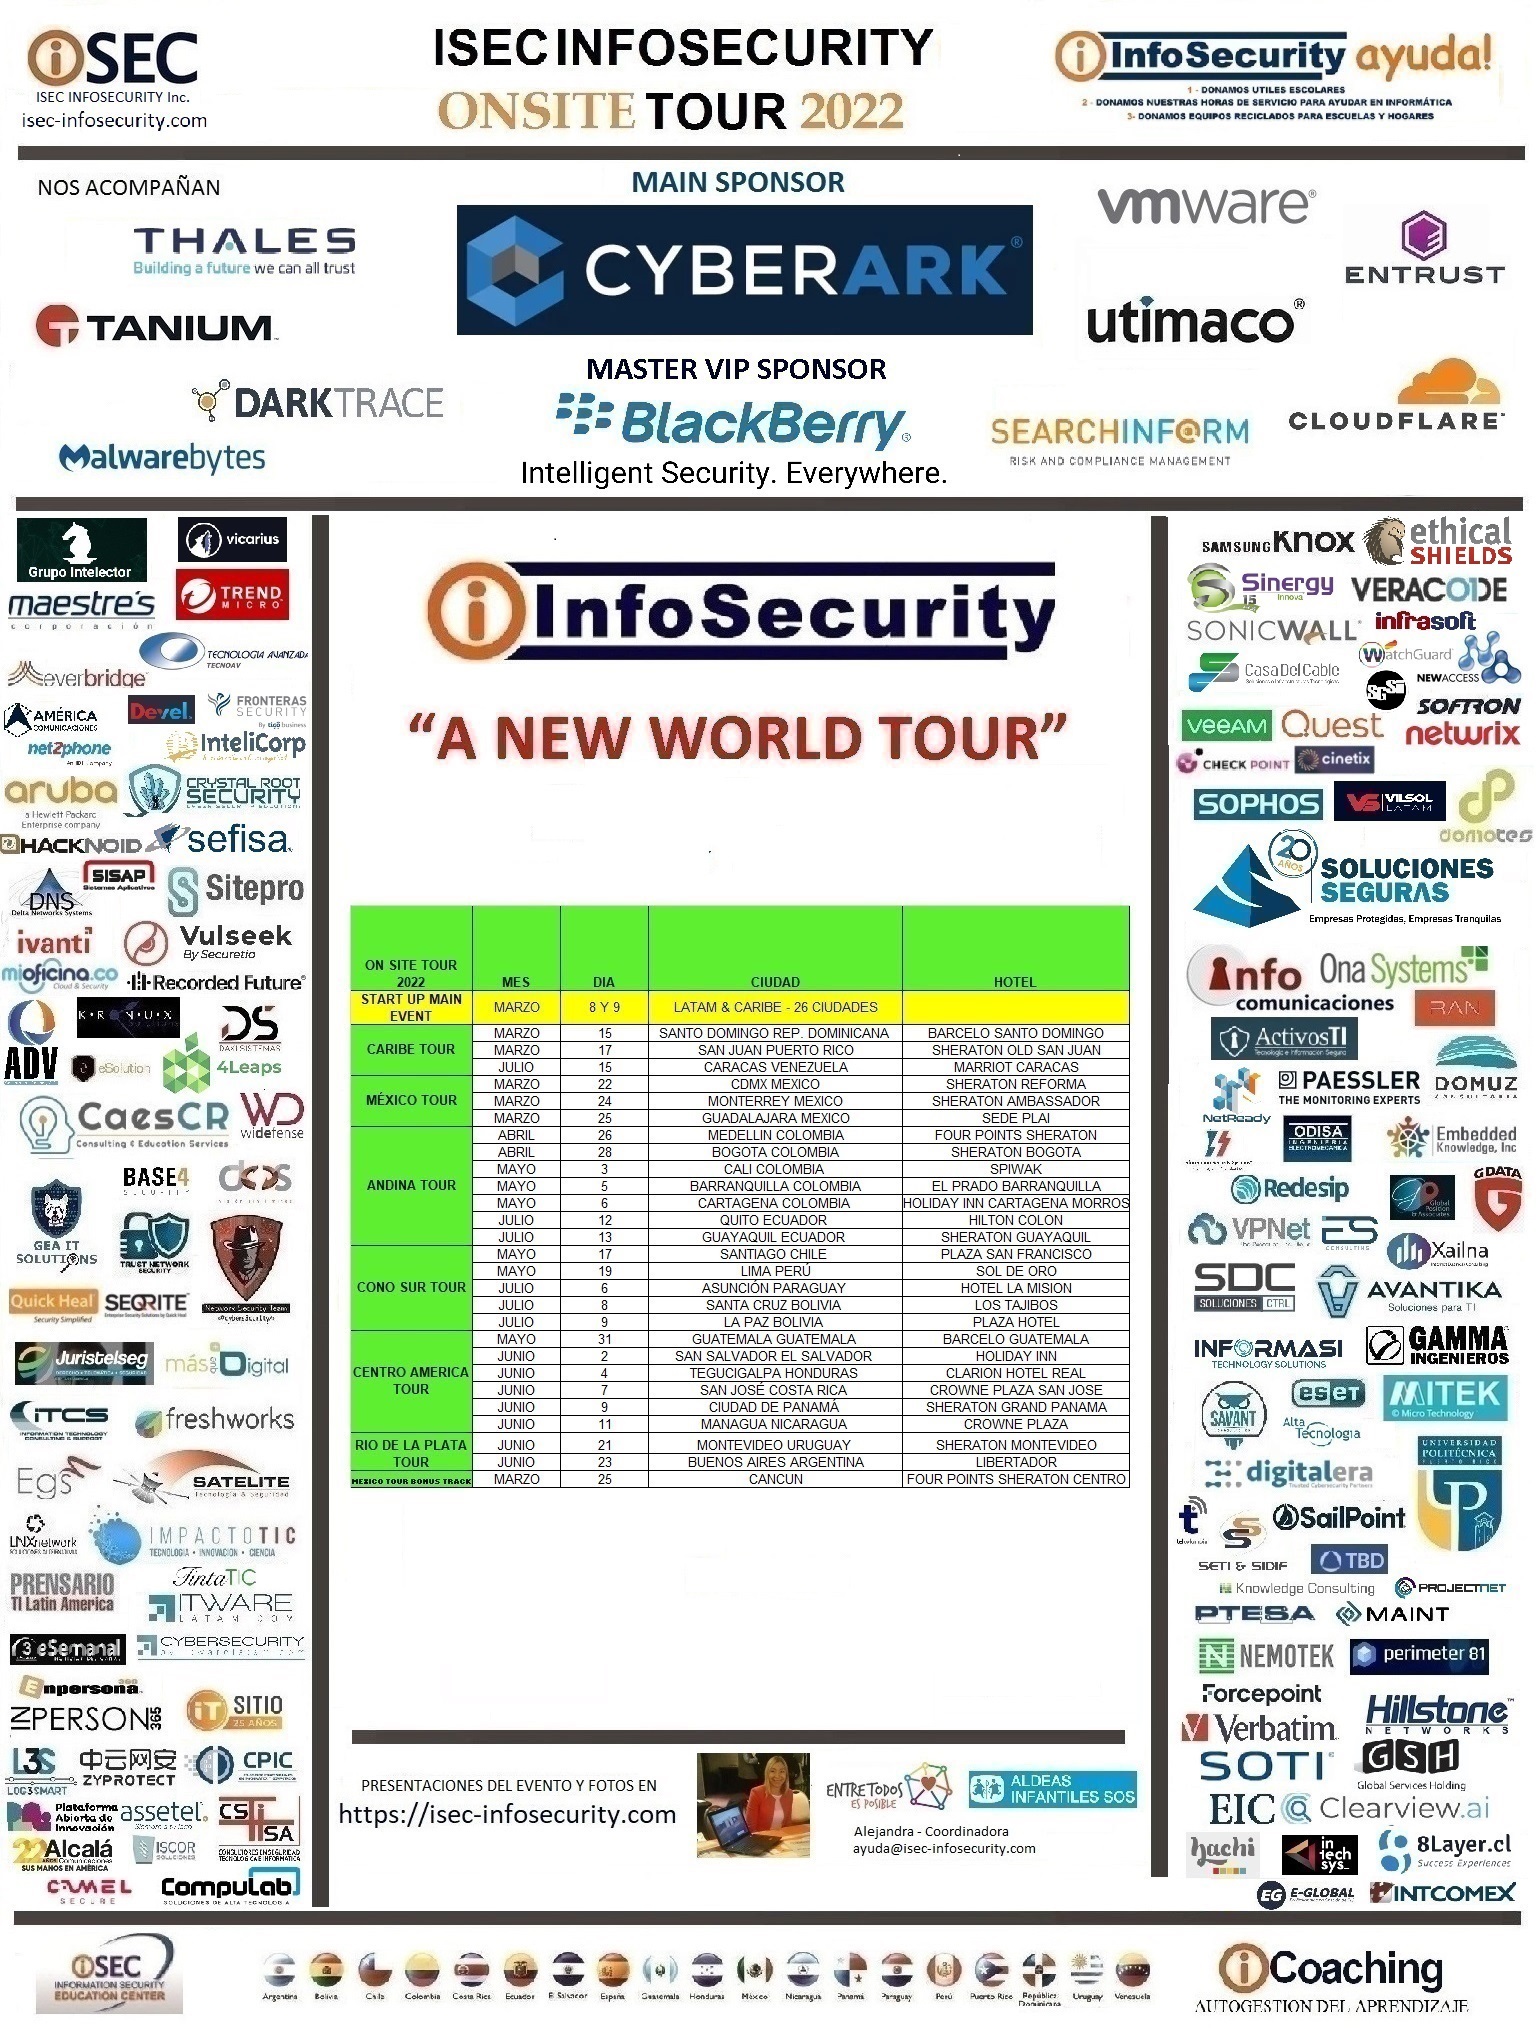 Infosecurity Tour 2022 y el nuevo compromiso de Fortinet con MITRE Engenuity Center